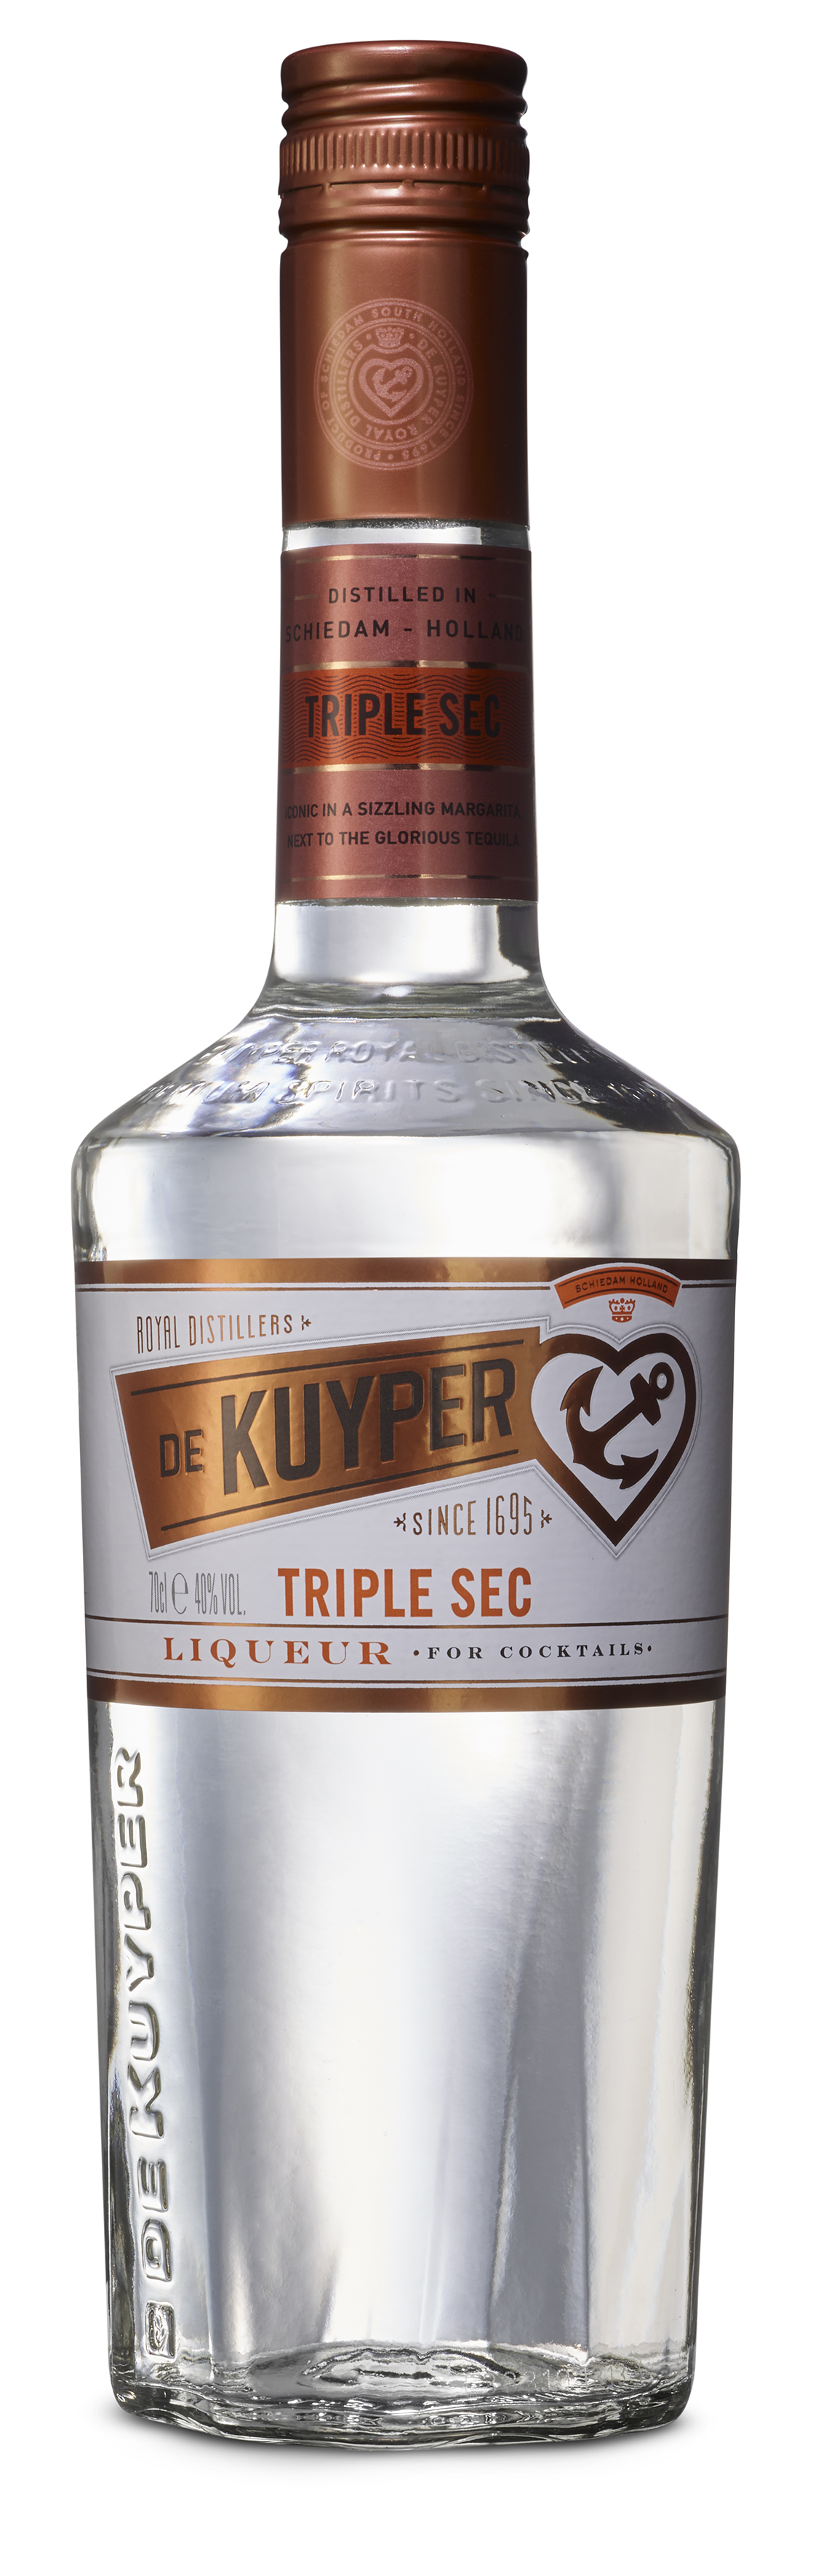 De Kuyper Triple Sec Likör 40%vol. 0,7l